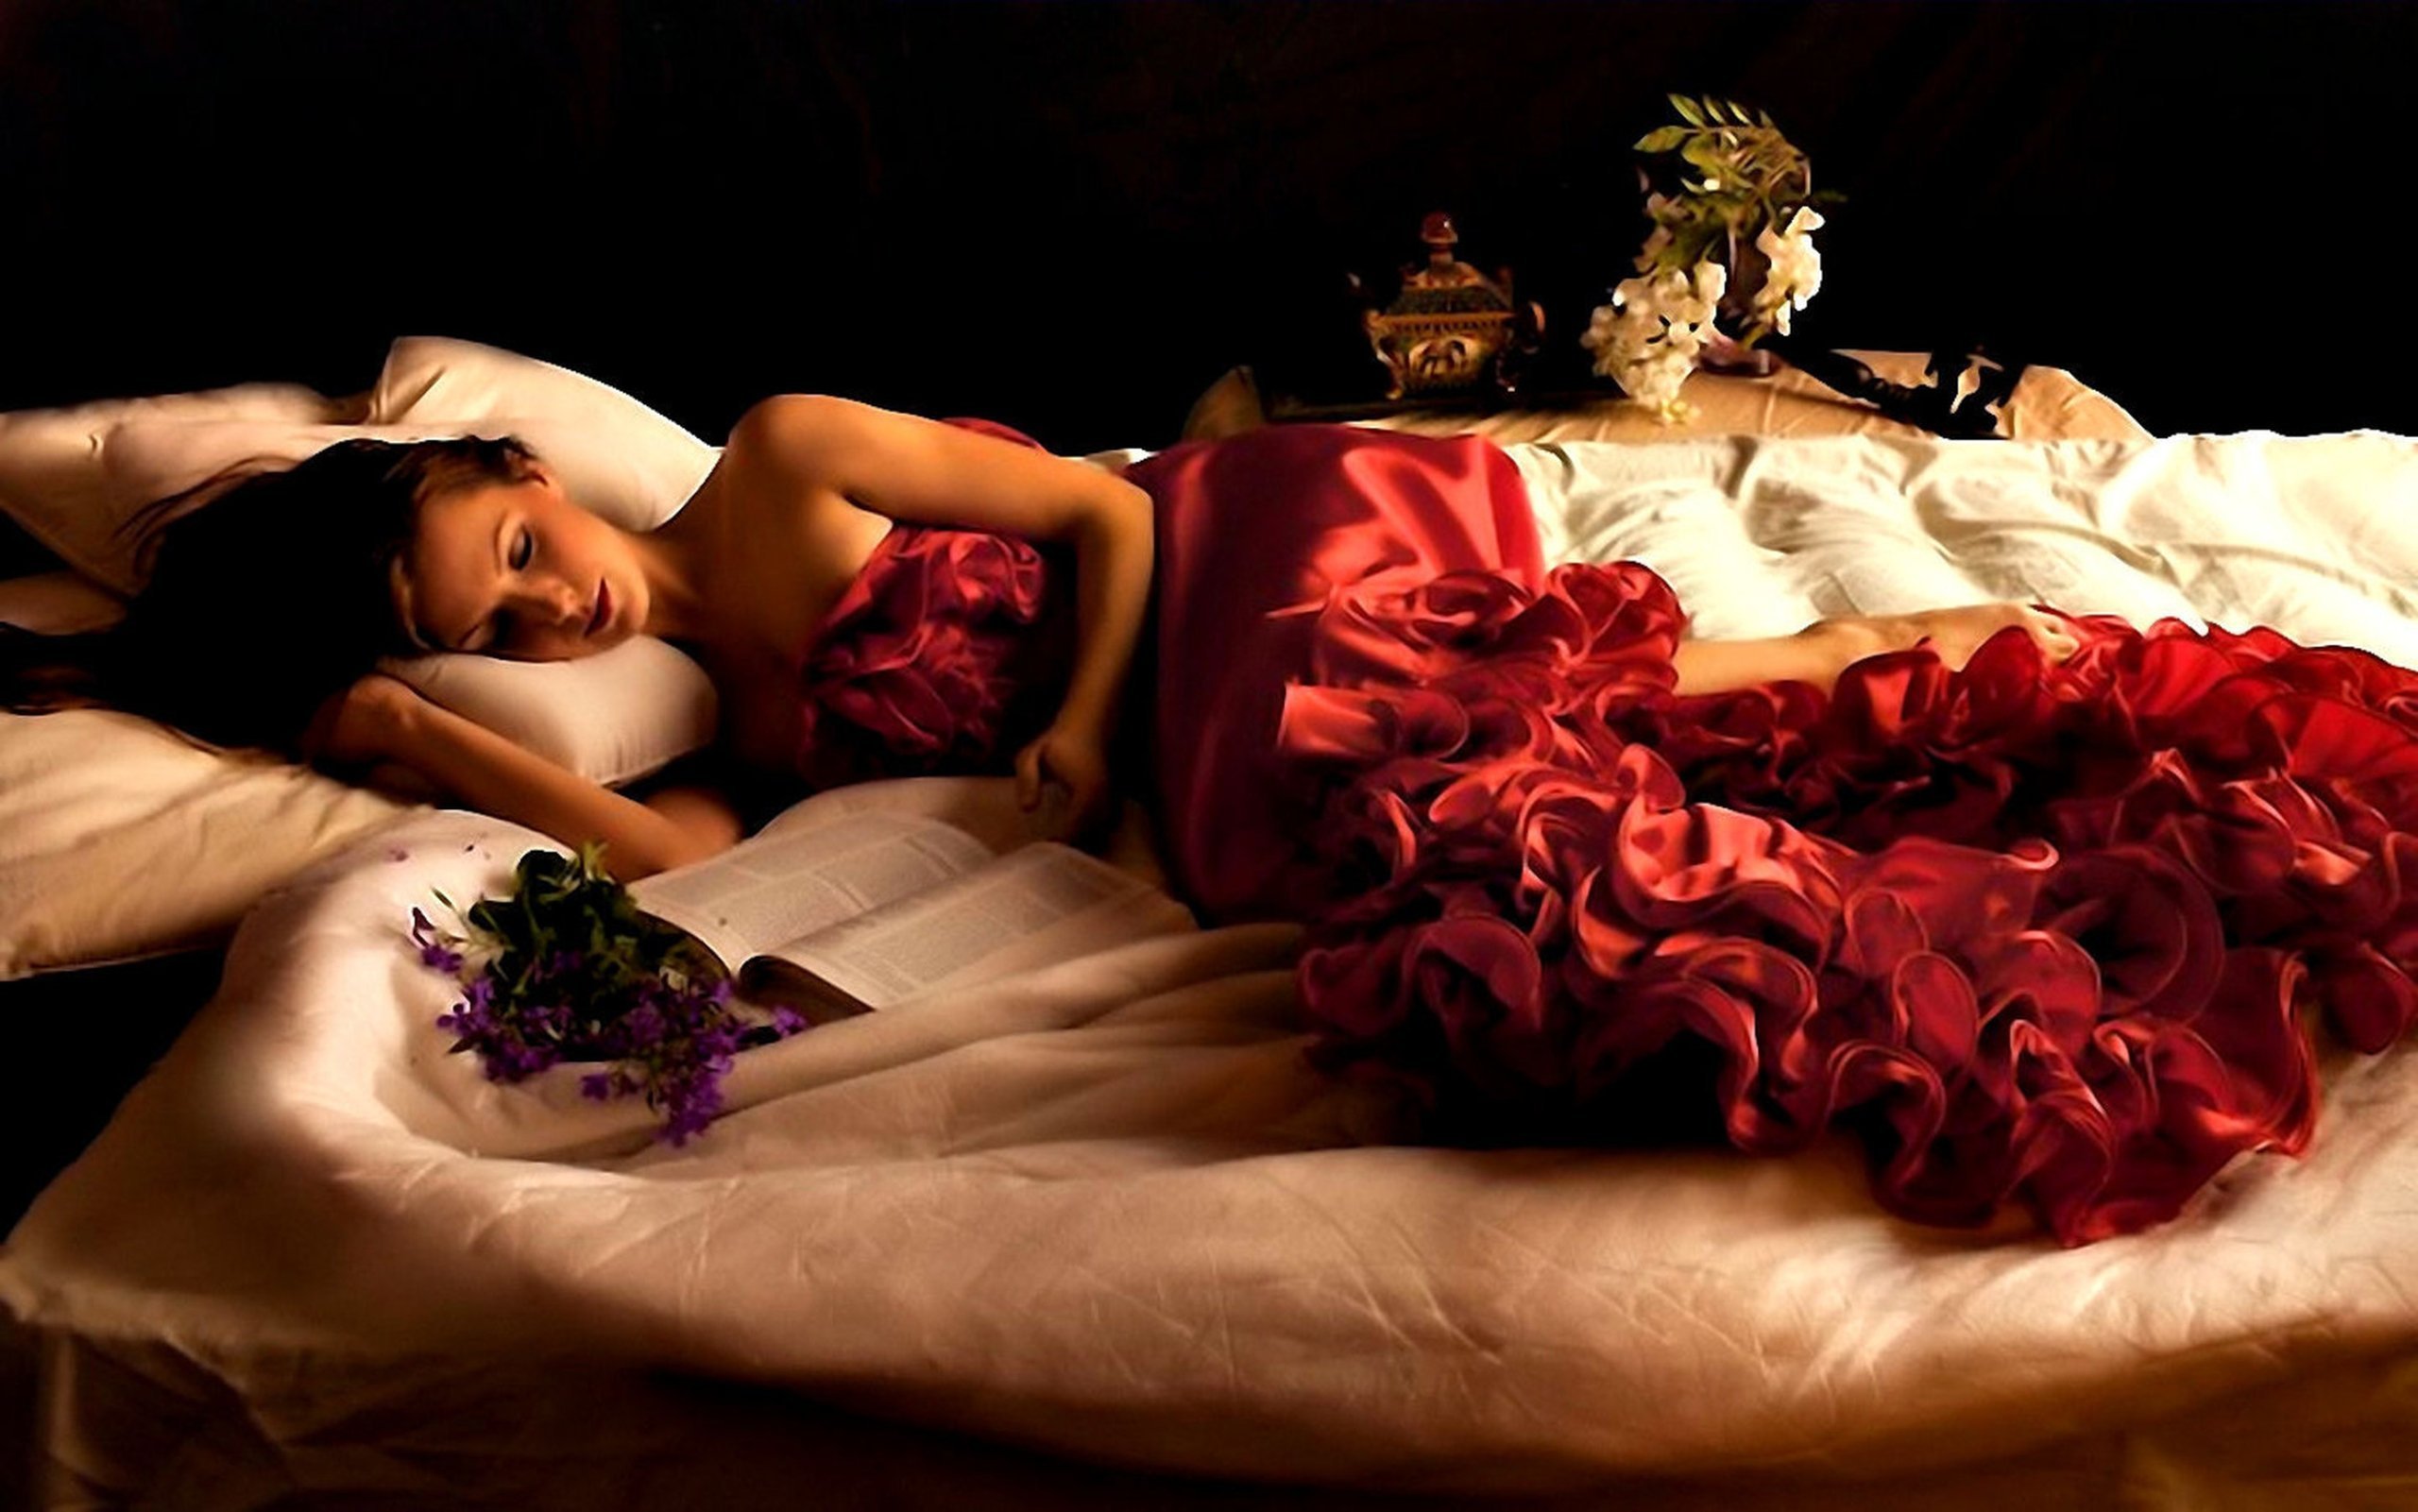 Девушки вечера видео. Девушка в постели с цветами. Романтическая девушка.